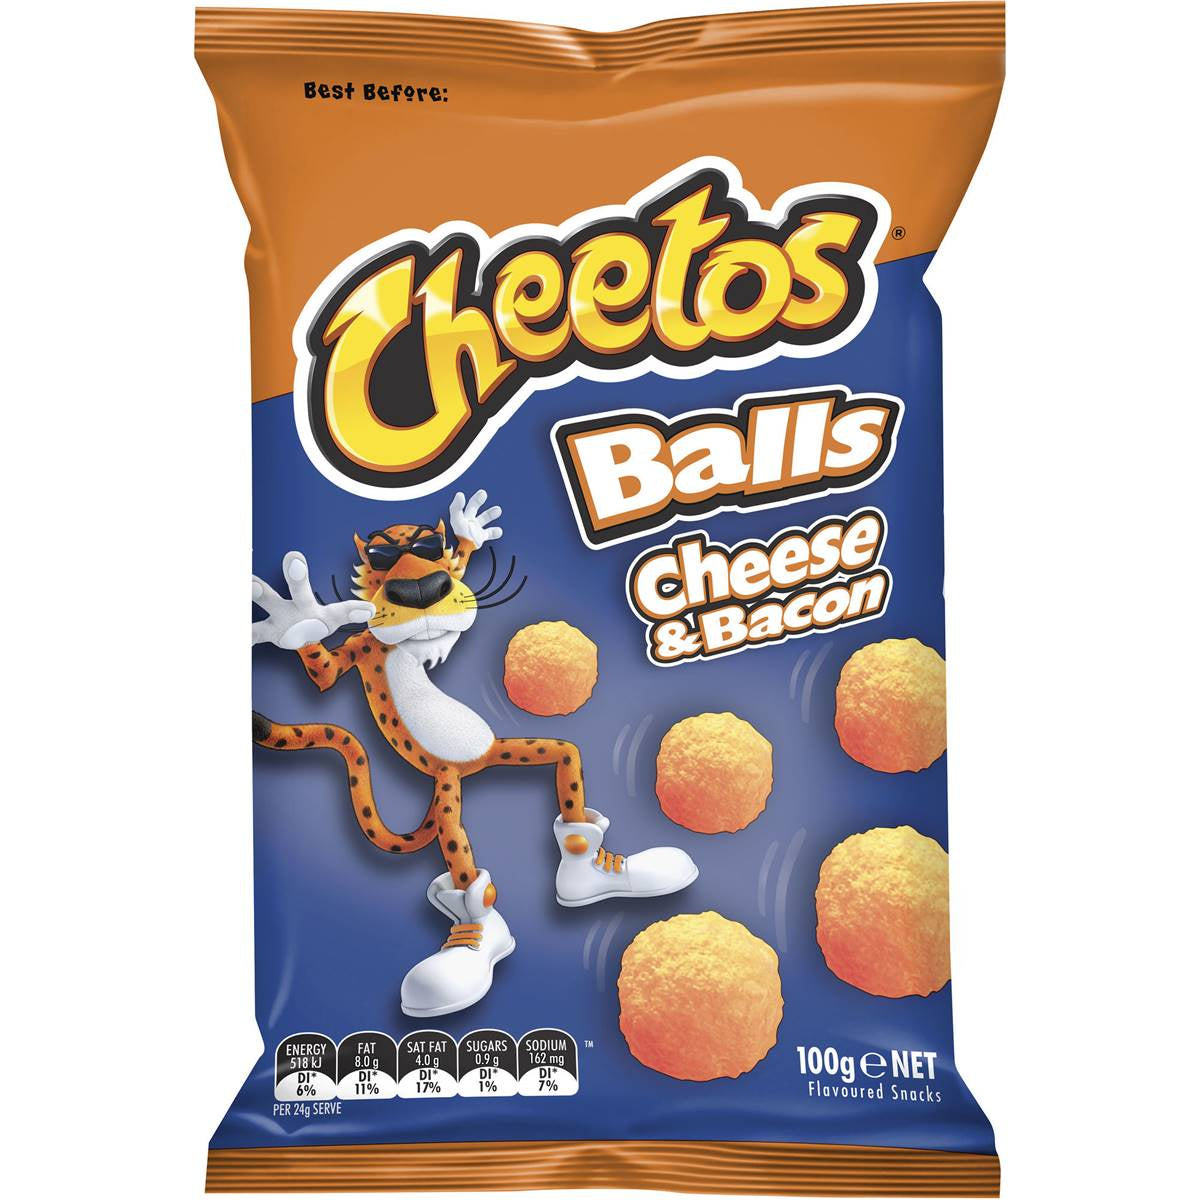 Cheetos Cheese And Bacon Balls 90G